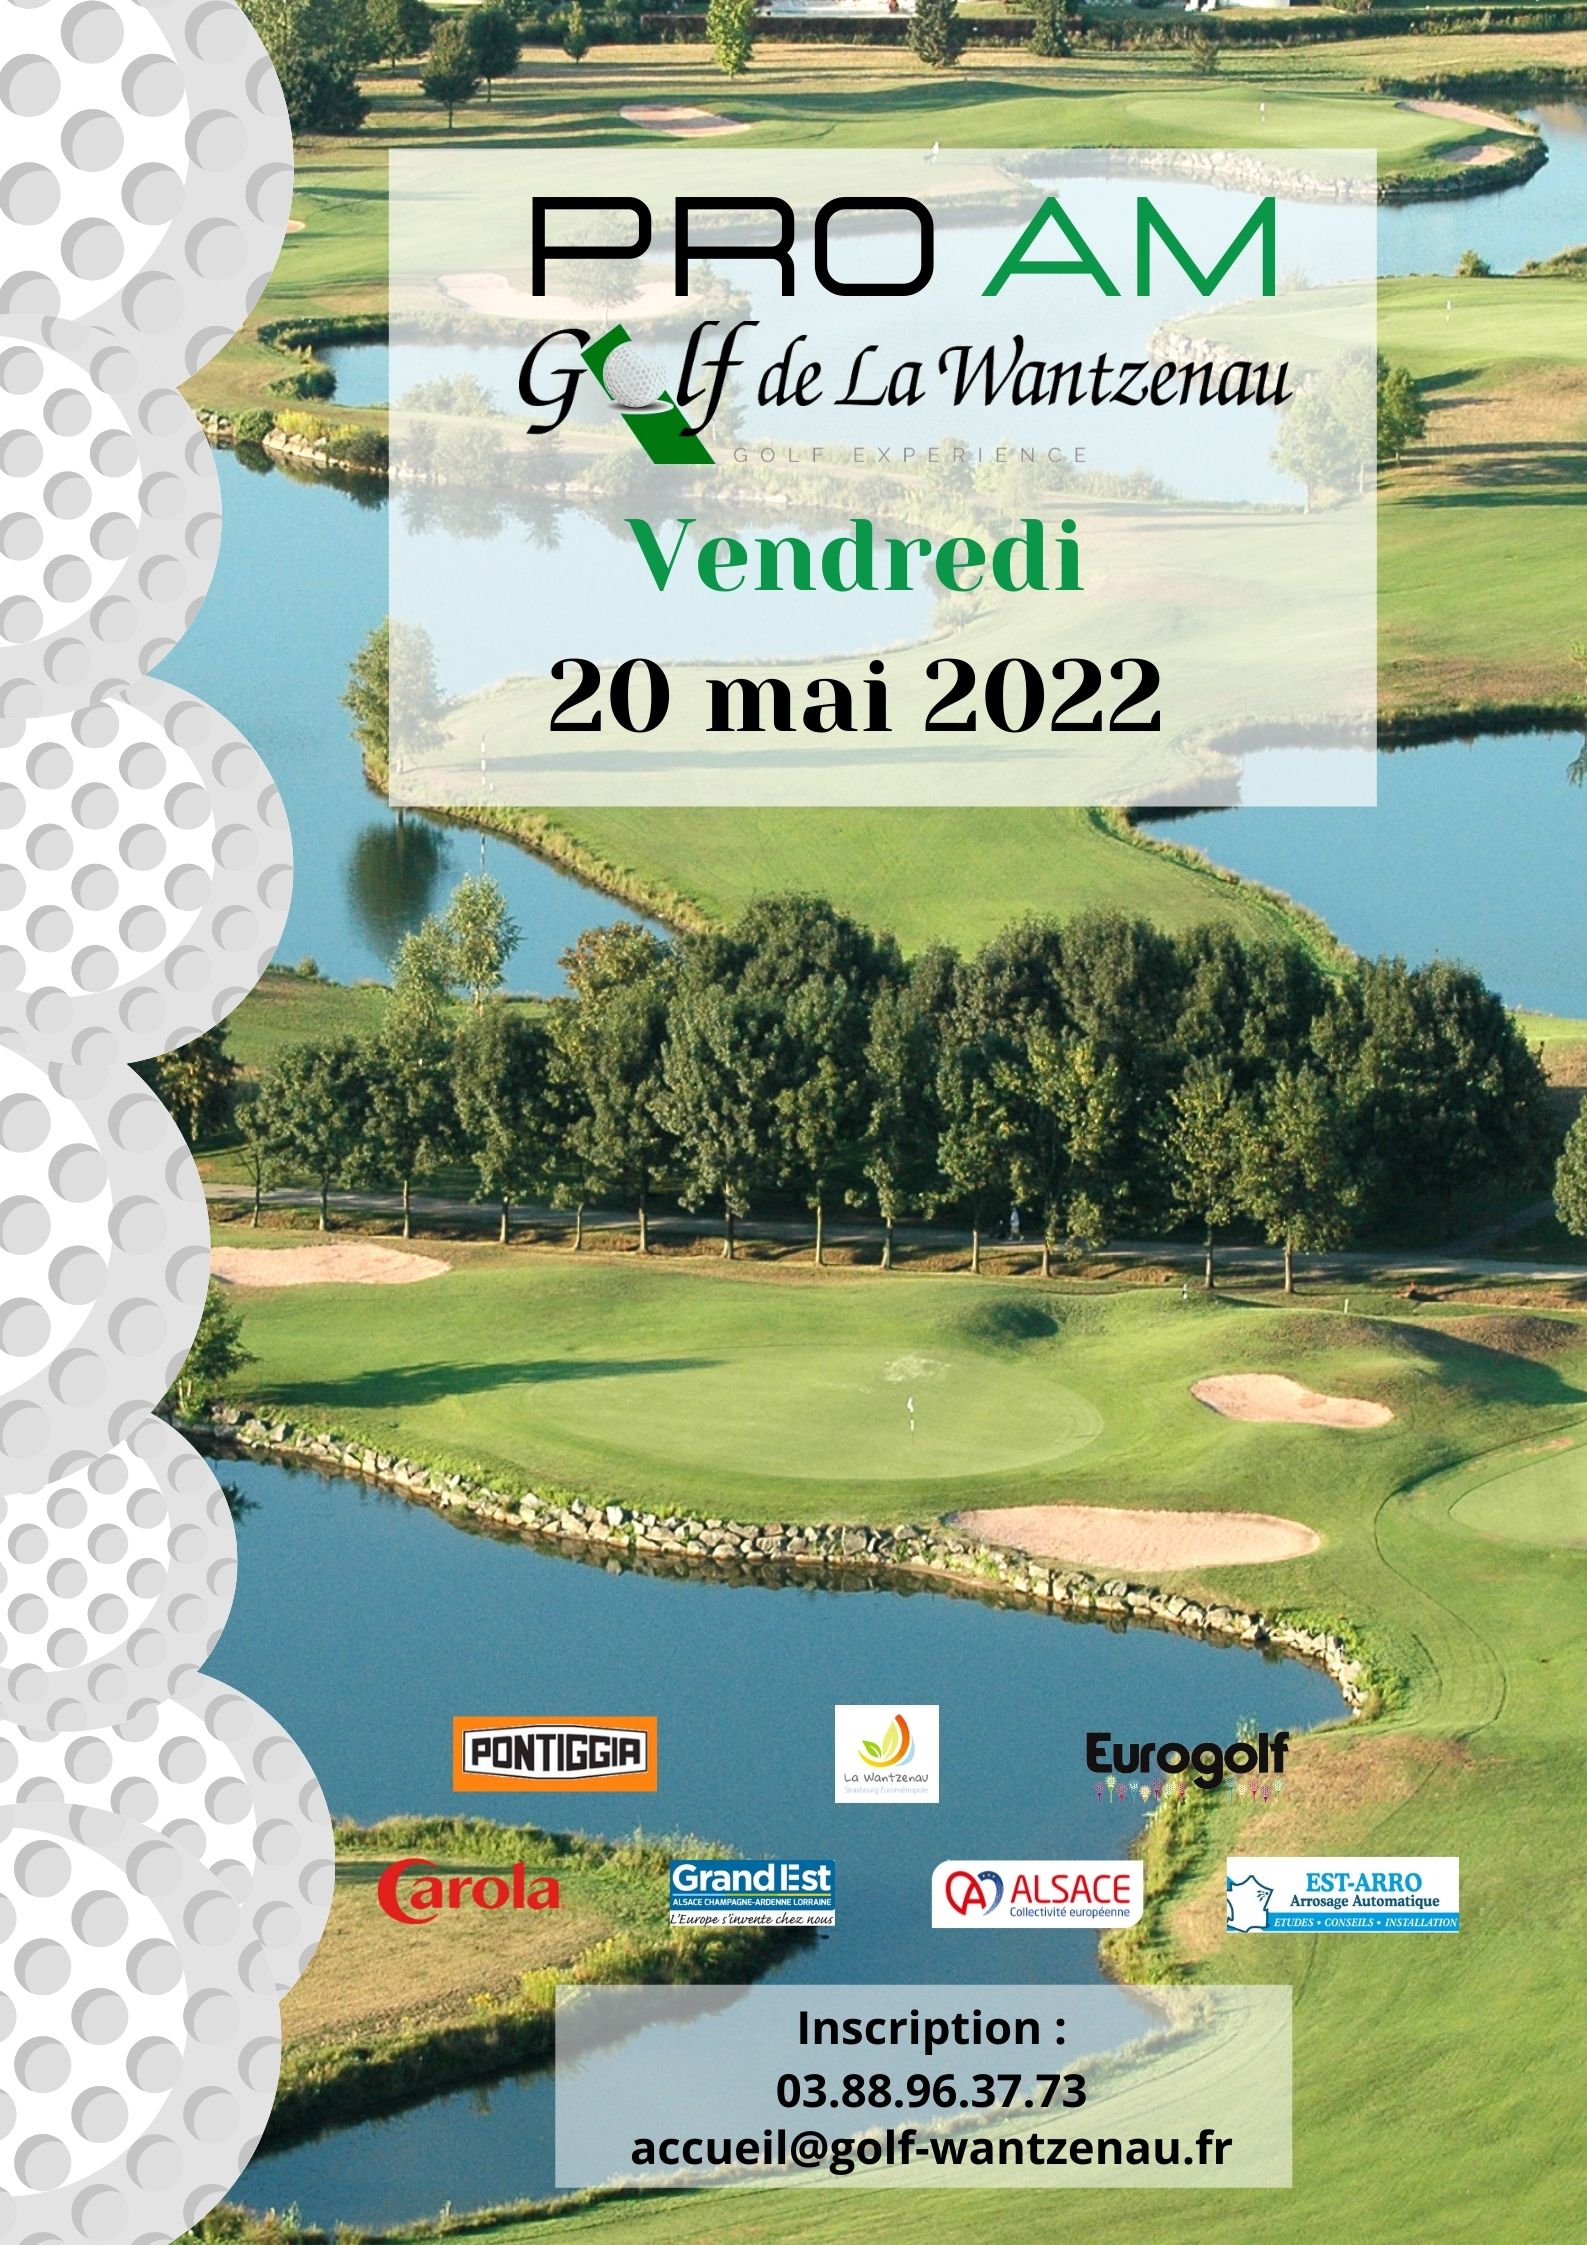 PRO AM 2022 Golf de La Wantzenau